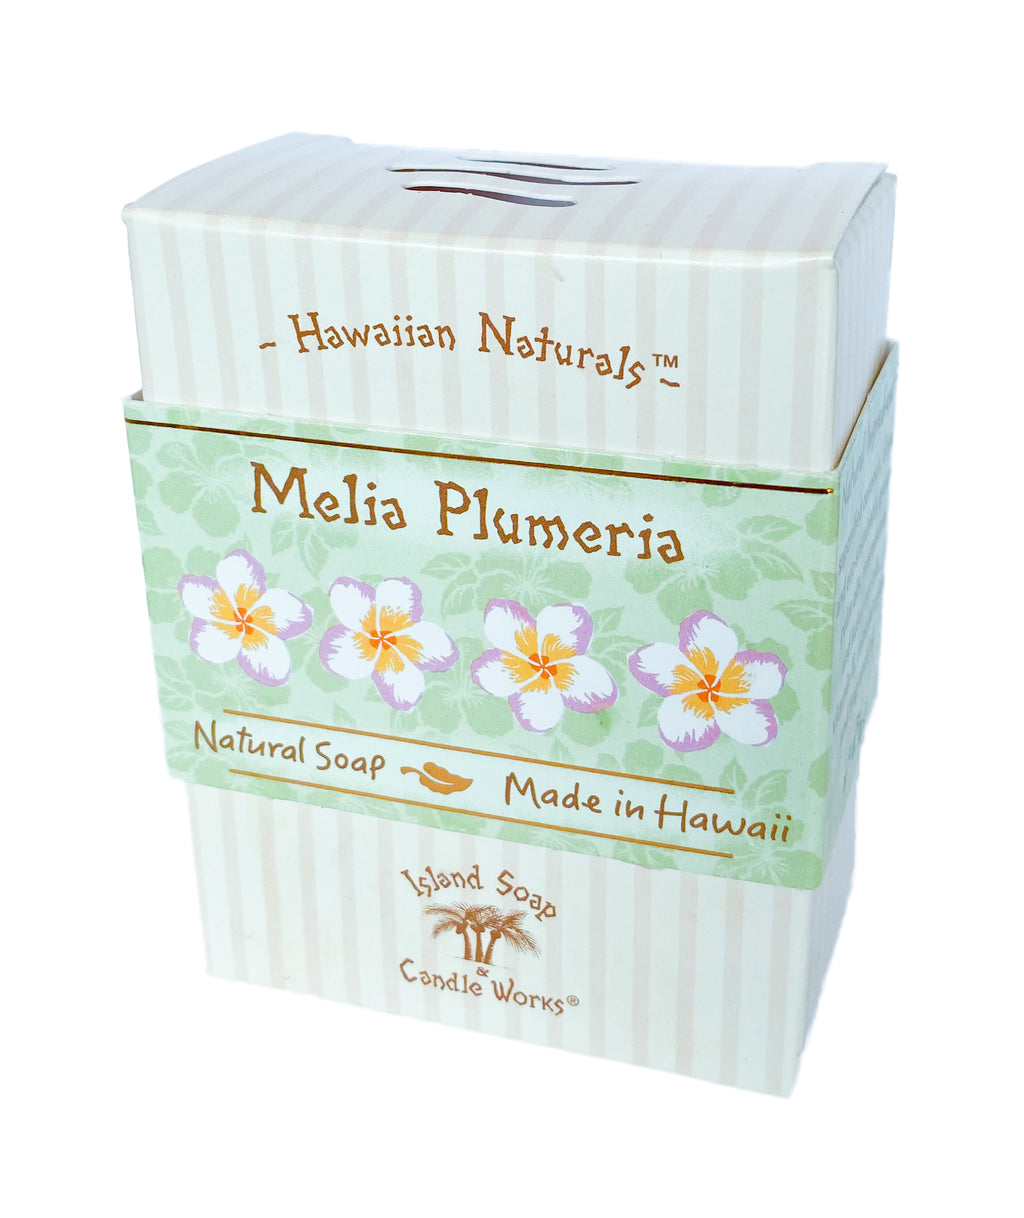 Melia Plumeria - 4.4 oz. Hawaiian Naturals Soap